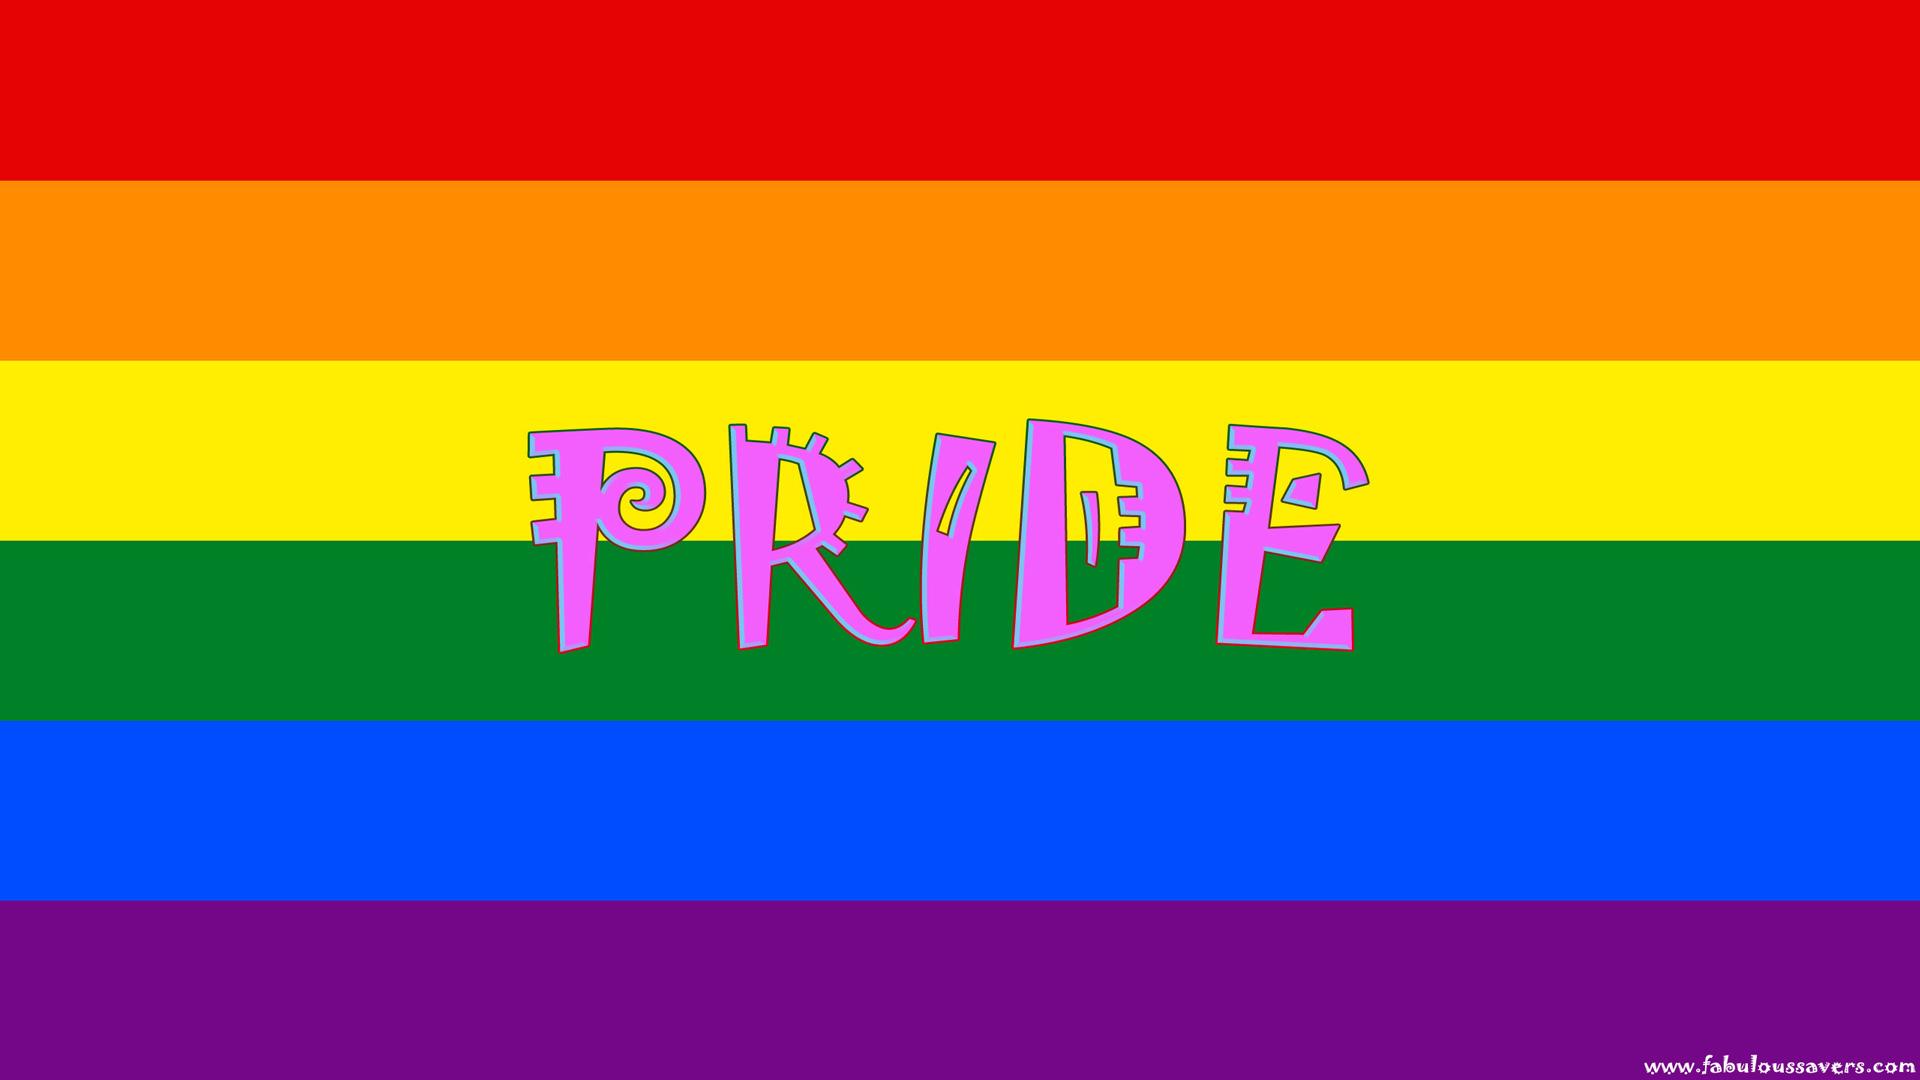 gay pride rainbow wallpaper